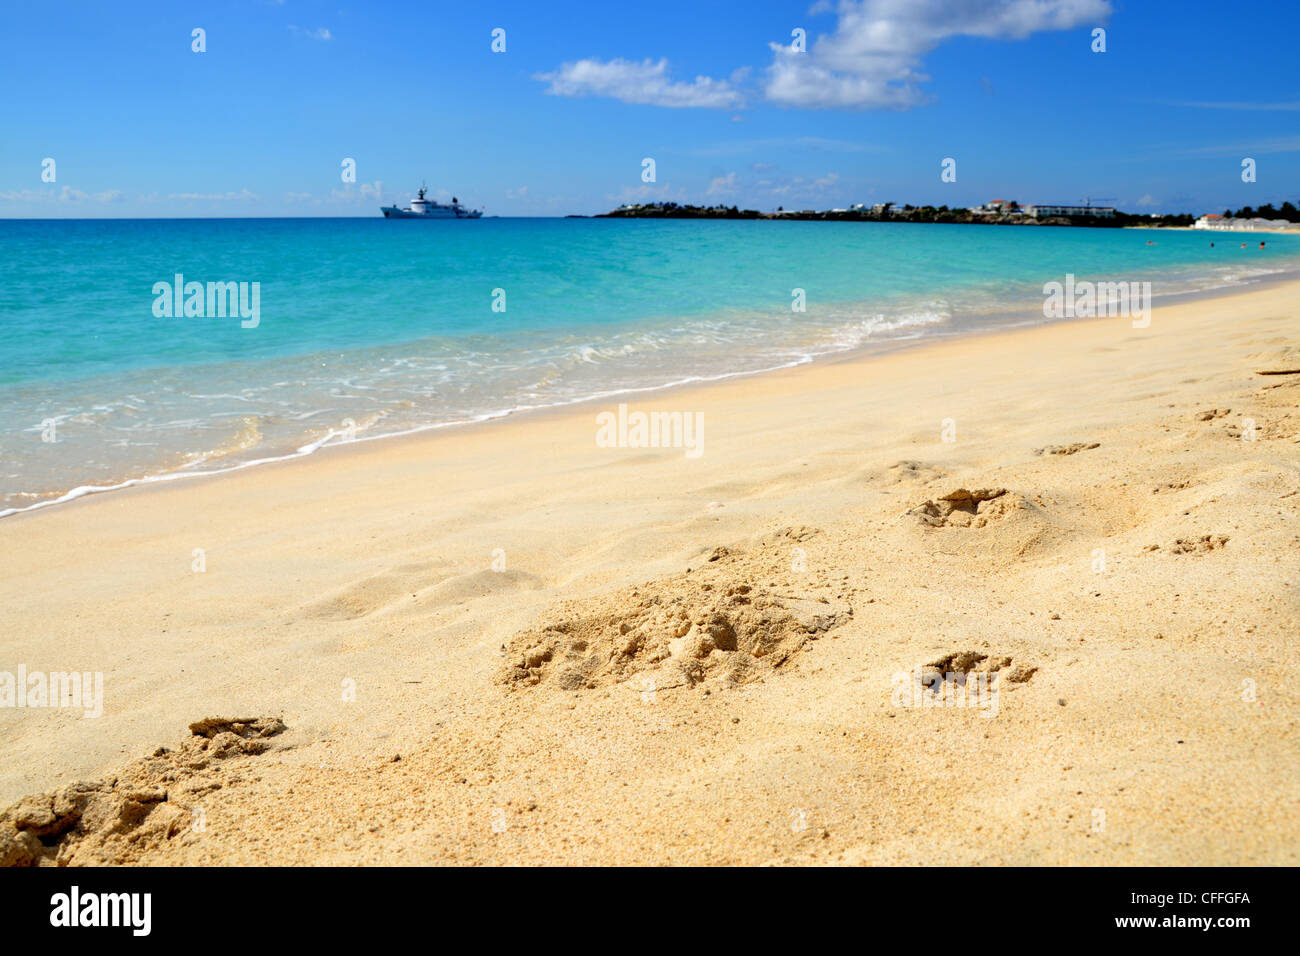 Landschaftsfoto der Küste am Strand mit Fußabdrücken im Sand, türkisfarbenem Wasser und Horizont. Stockfoto